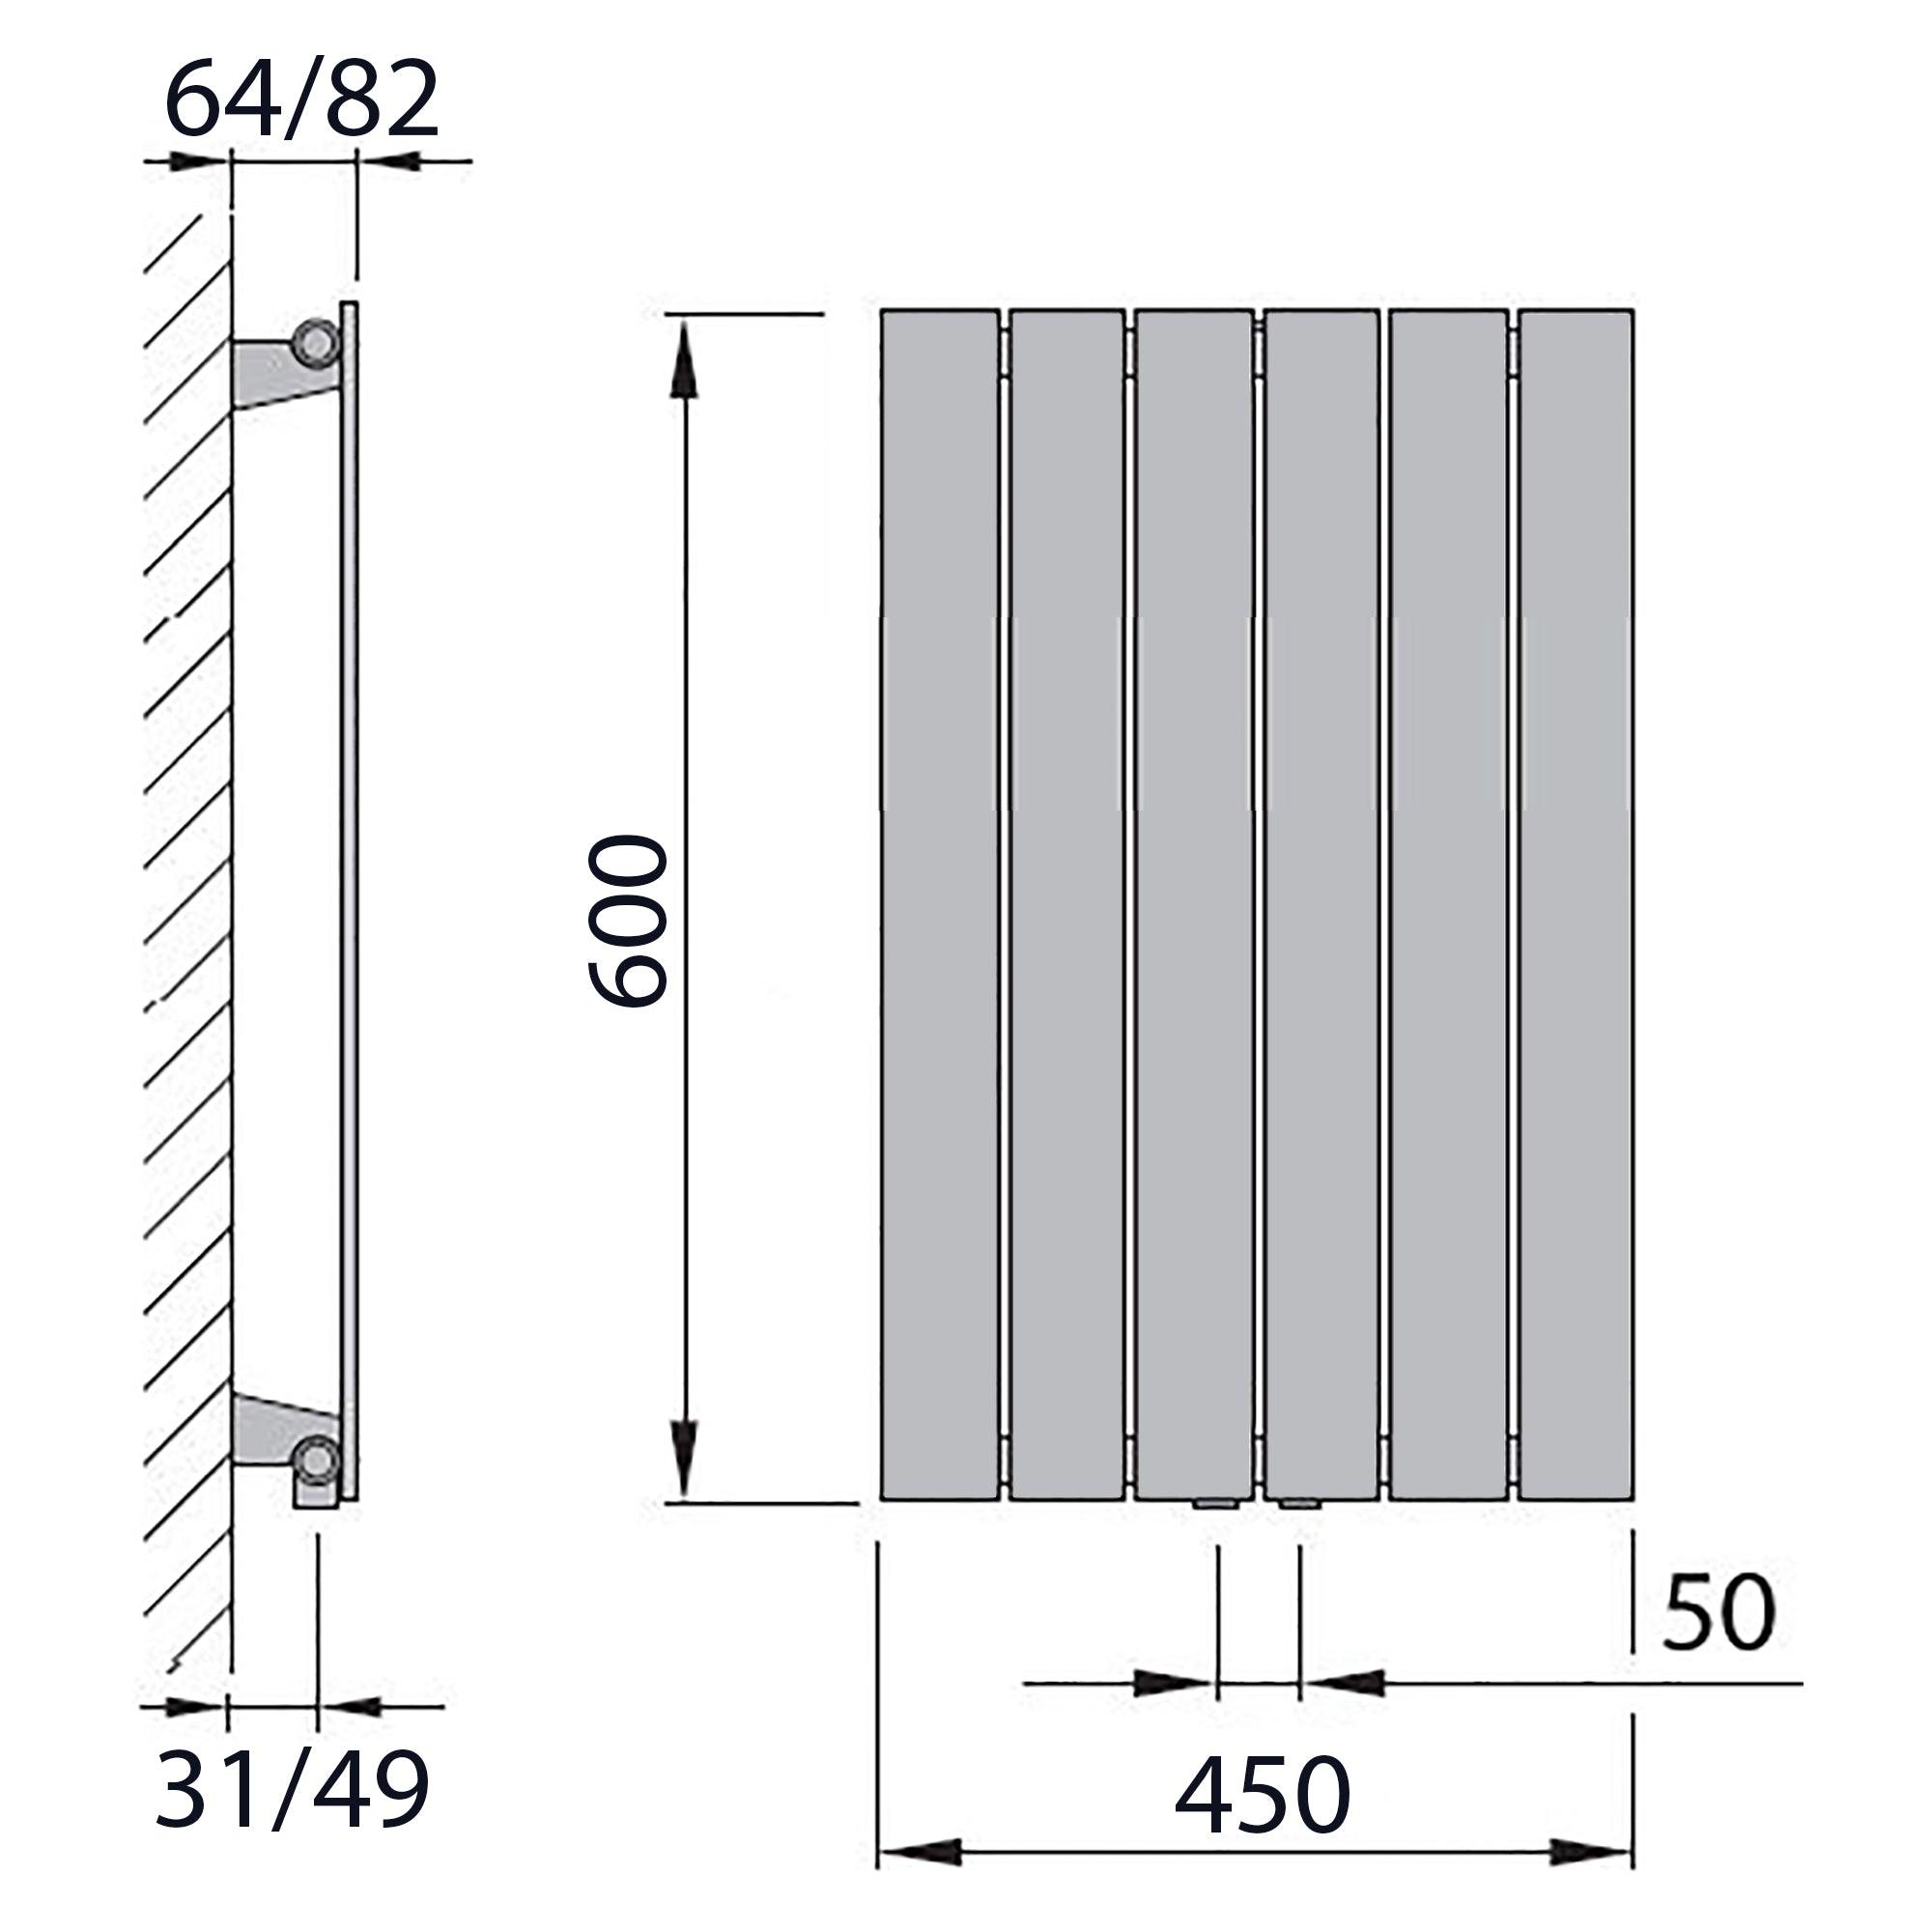 Design Paneelheizkörper vertikal 600 x 450 anthrazit Heizkörper Badheizkörper flach Badezimmer Heizung technische Zeichnung - heizkoerper.shop